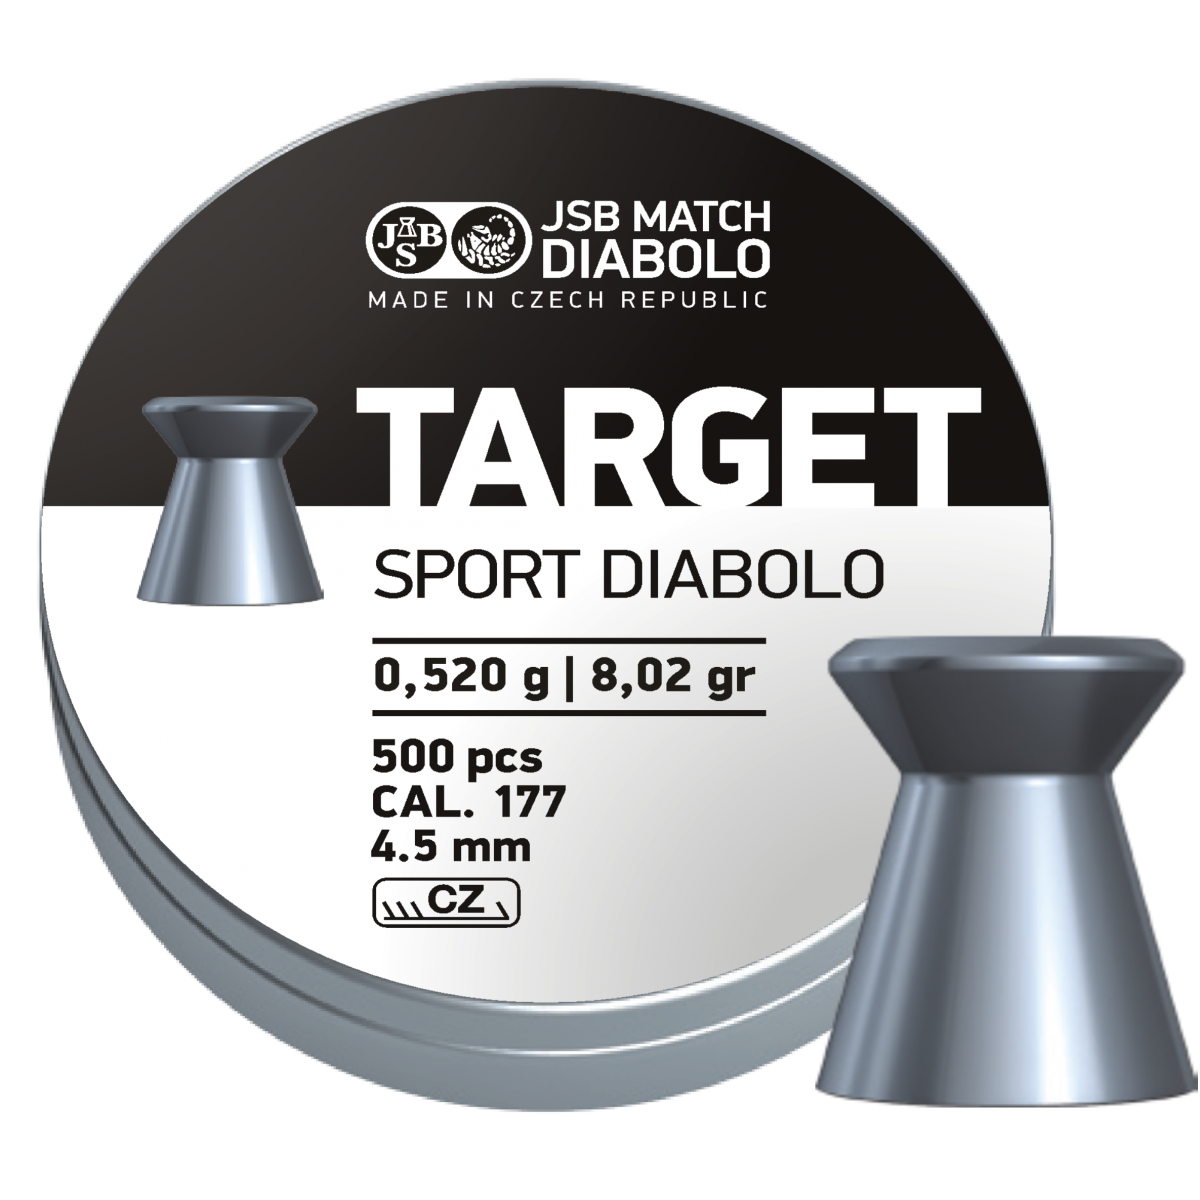 JSB Diablo Target Sport